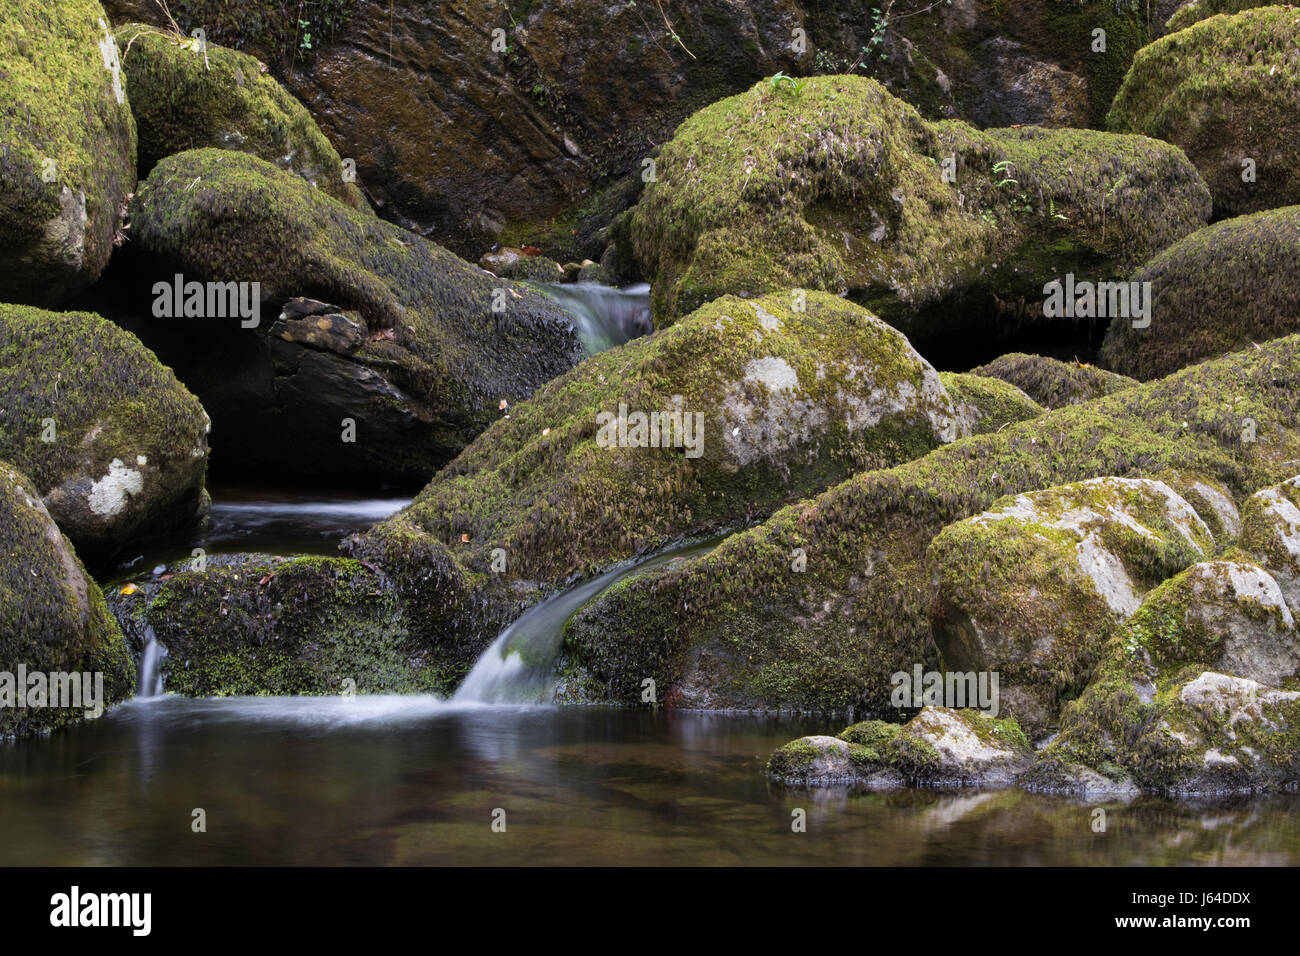 Ruisseau de montagne s'écoulant sur des rochers couverts de mousse dans le parc national de Snowdonia, le Pays de Galles Banque D'Images